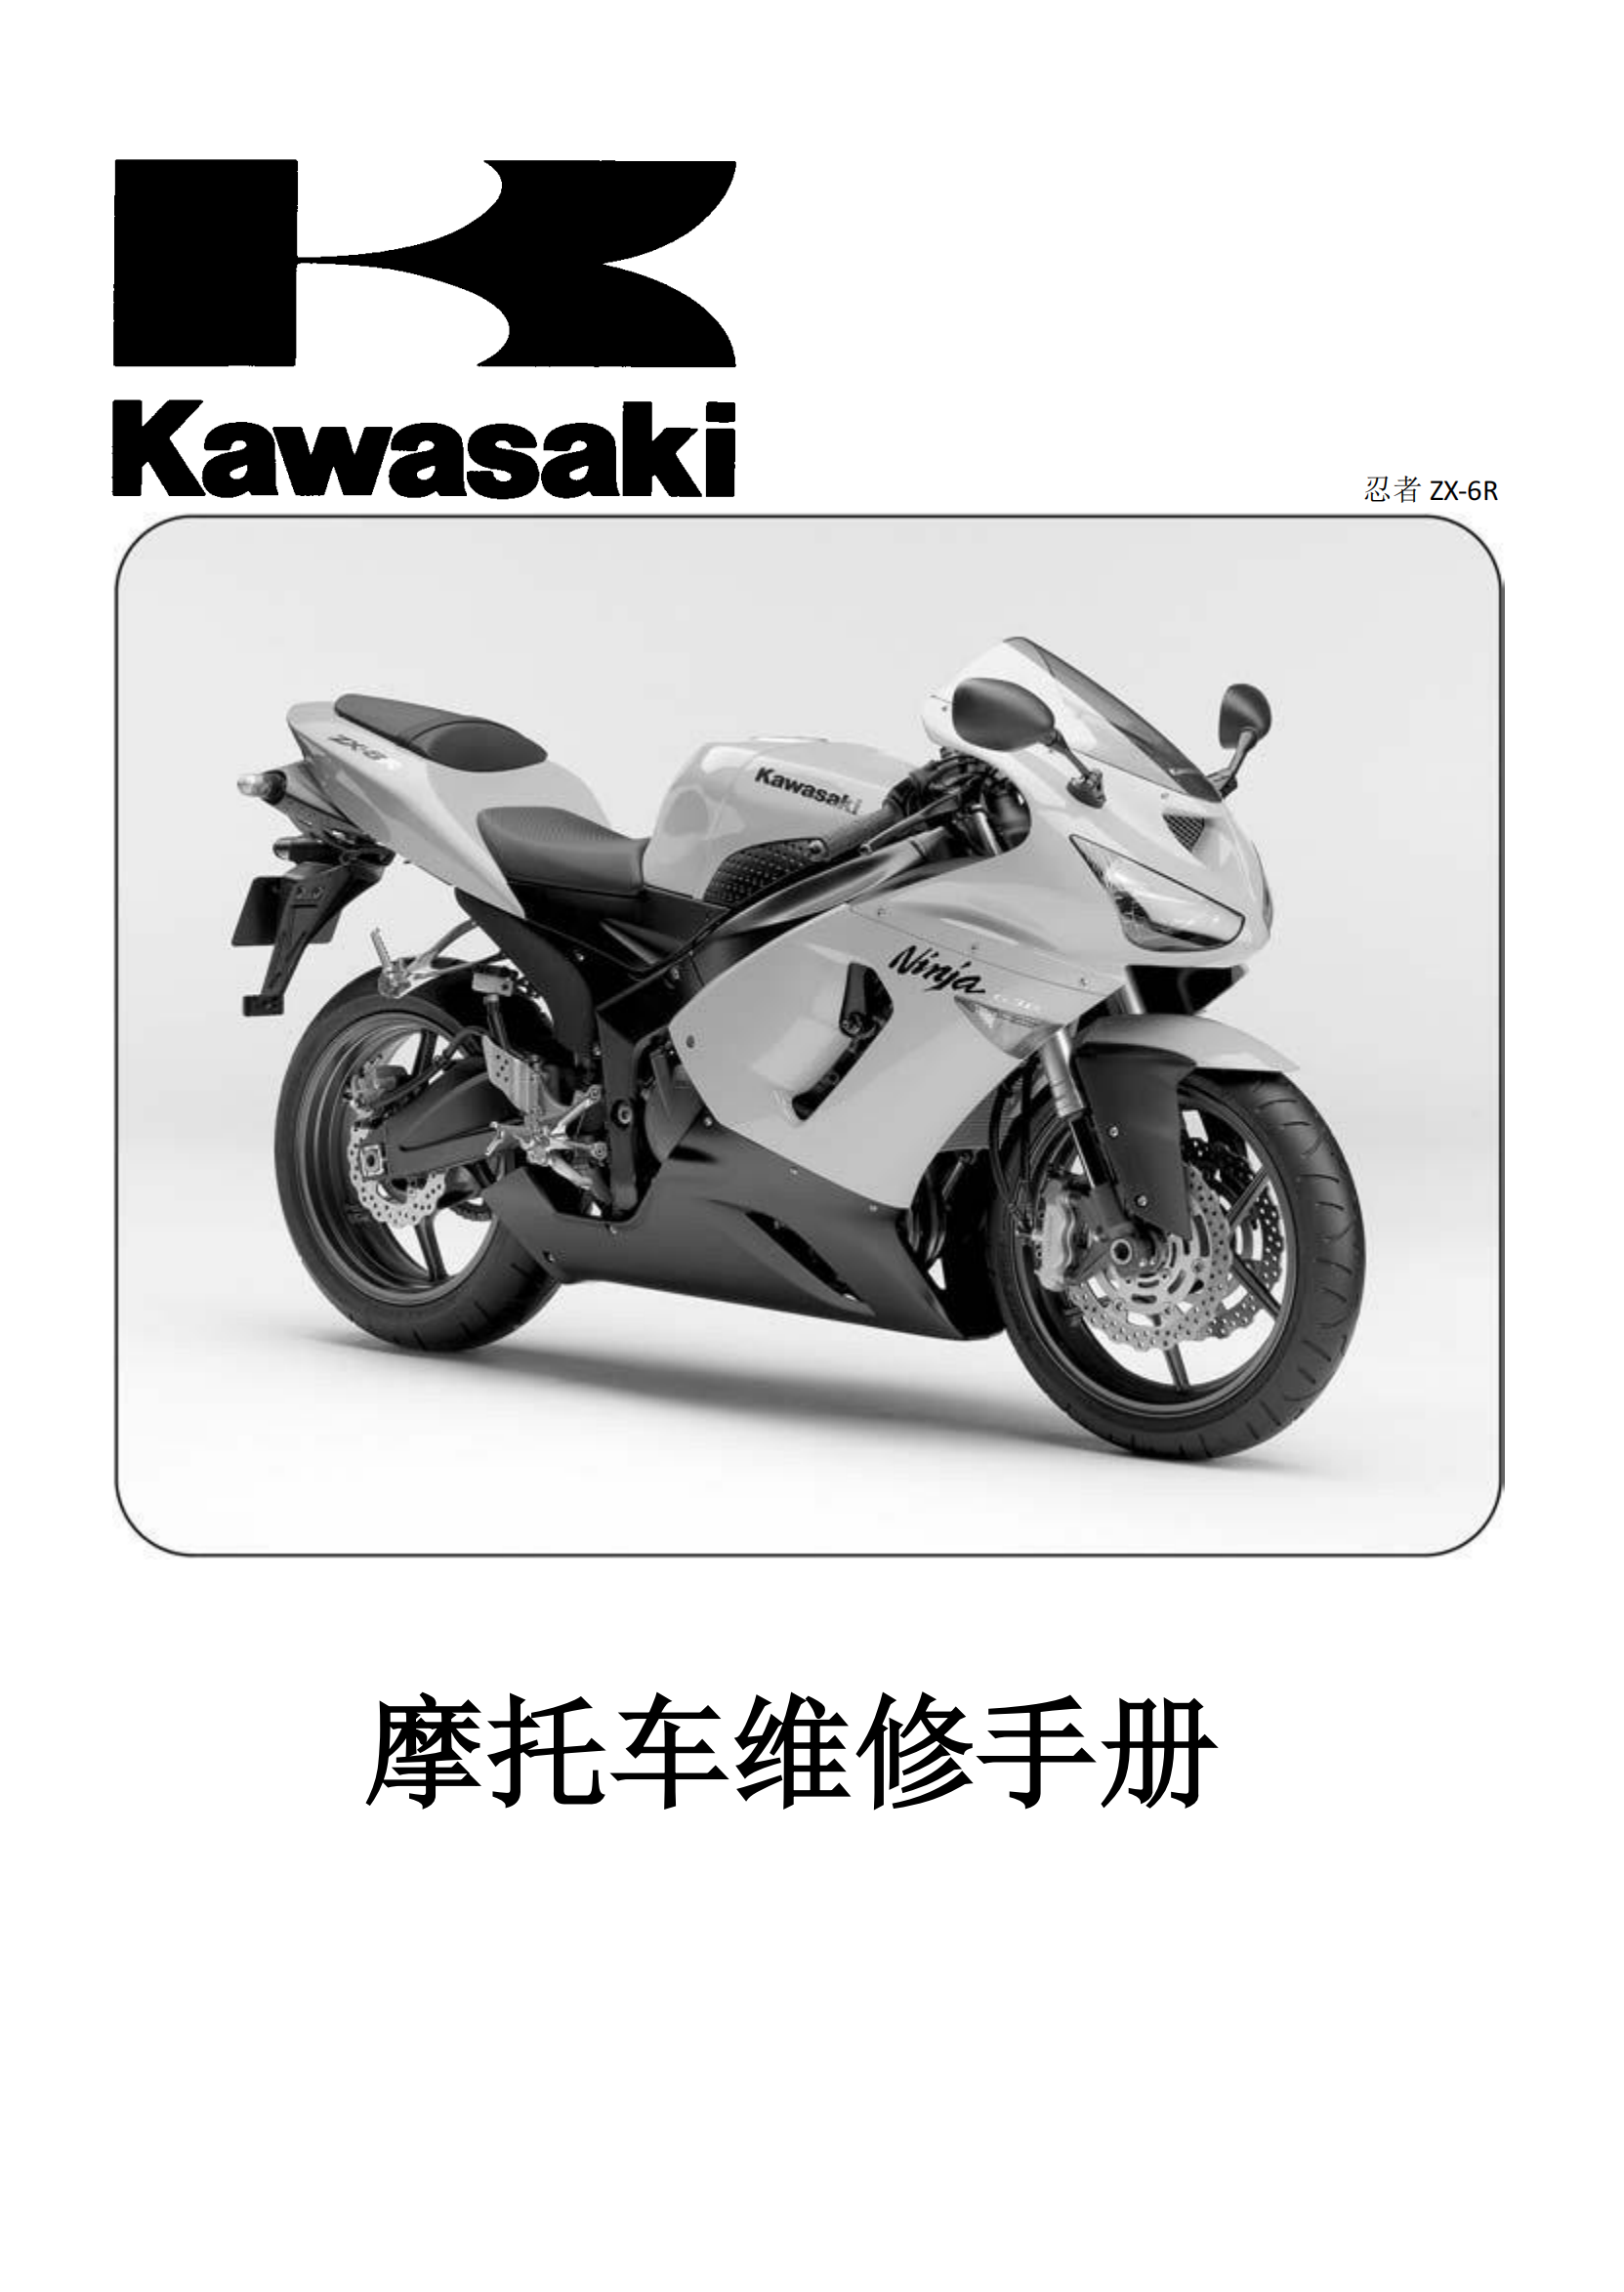 简体中文2005-2006年川崎ninja zx6r kawasaki ninja zx6r 维修手册插图